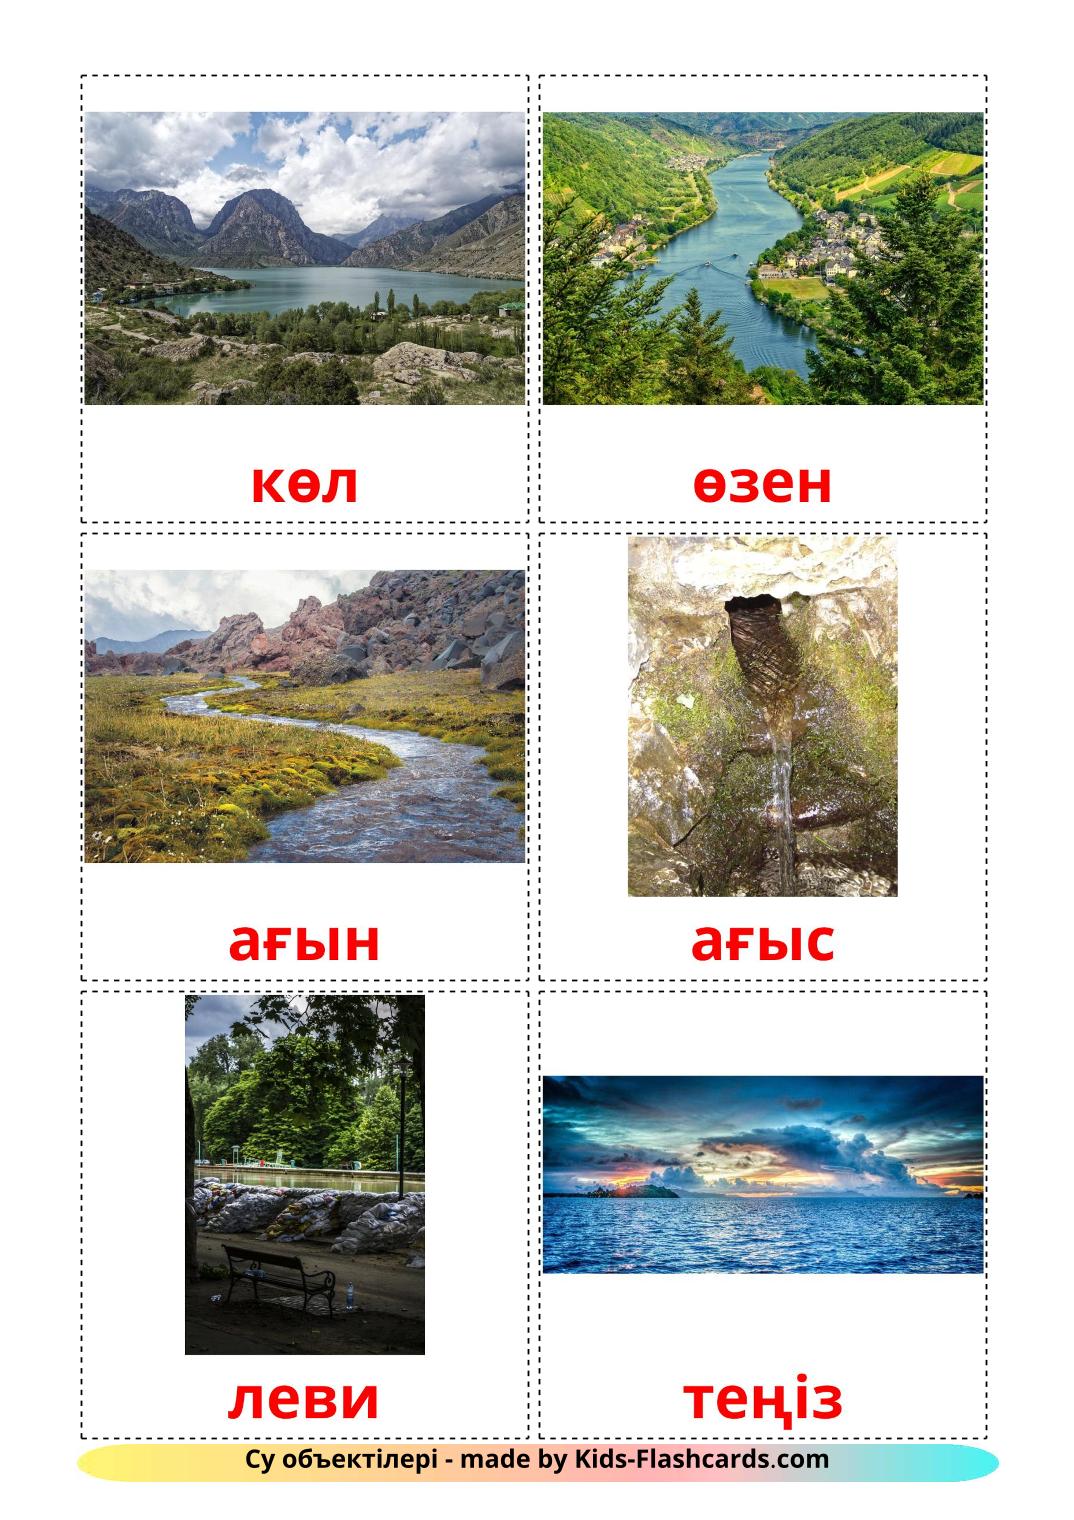 Cuerpos de agua - 30 fichas de kazajo para imprimir gratis 